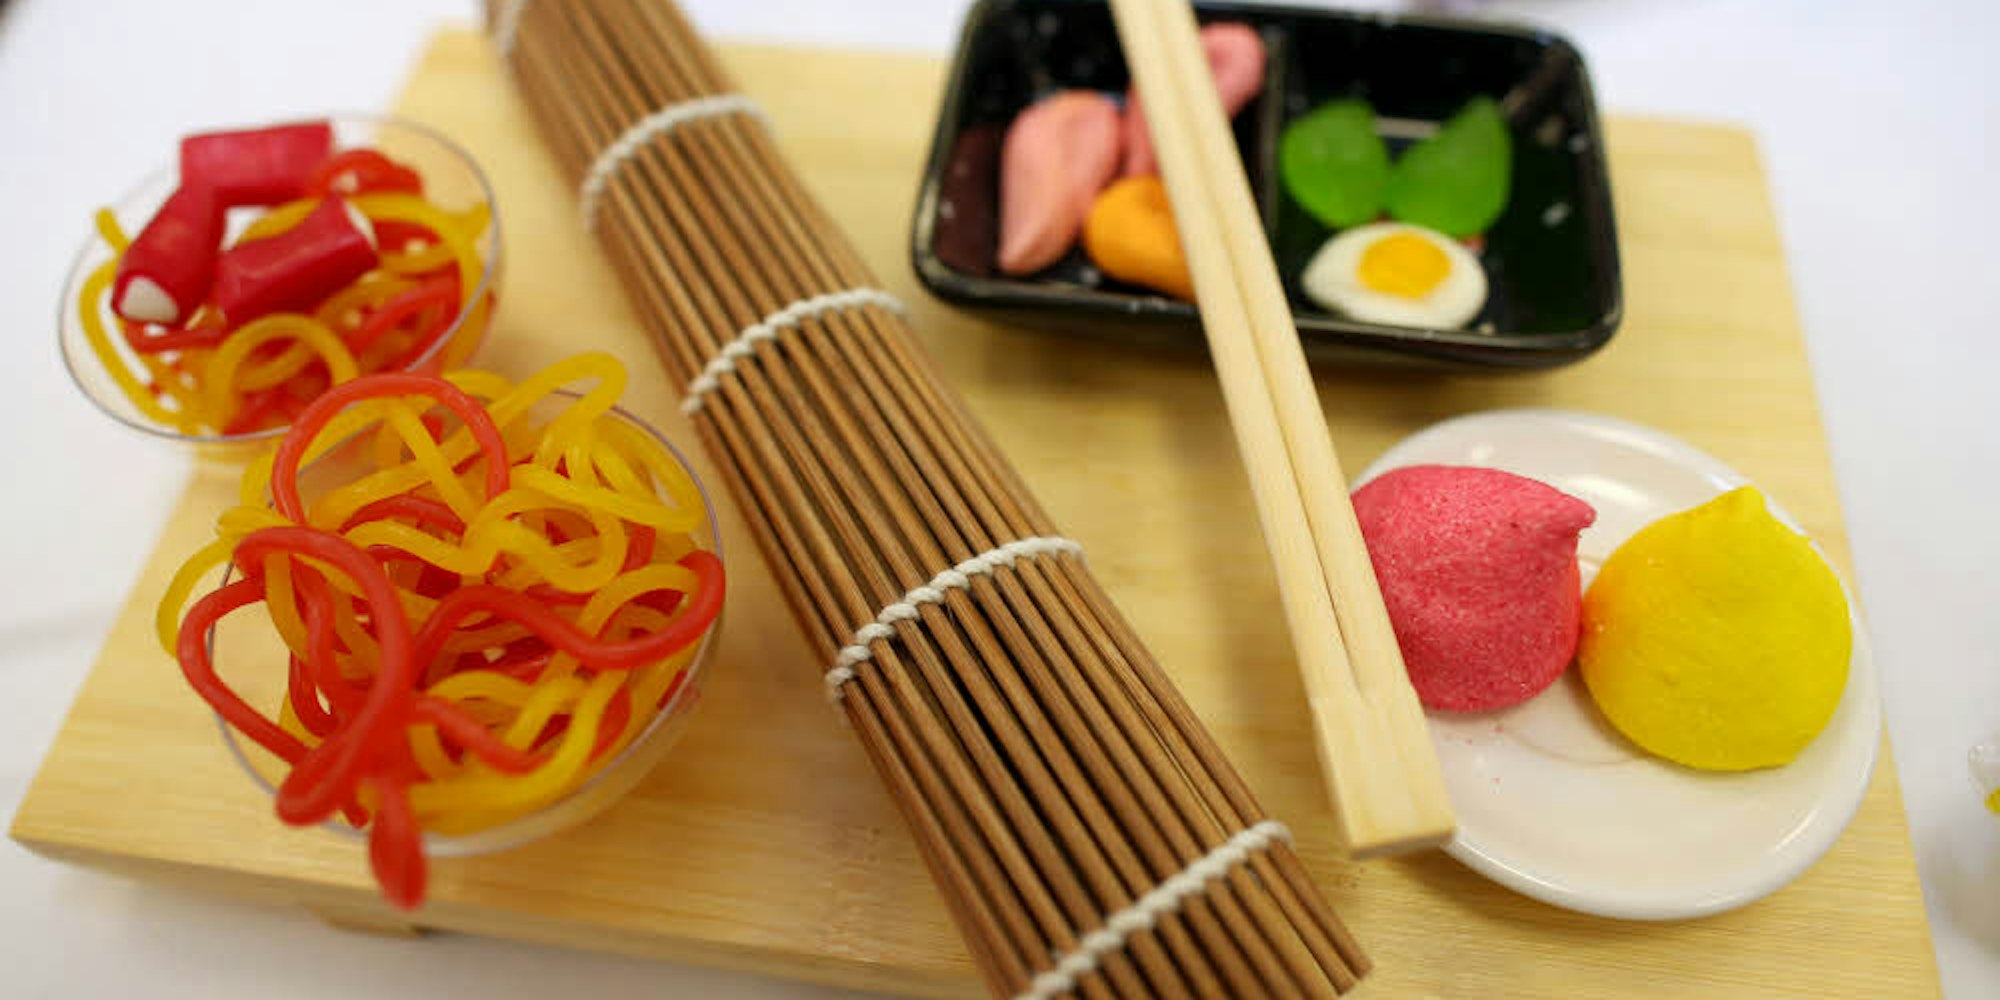 Fruchtgummi im Sushi-Stil aus einer Asiabox von Look-O-Look.